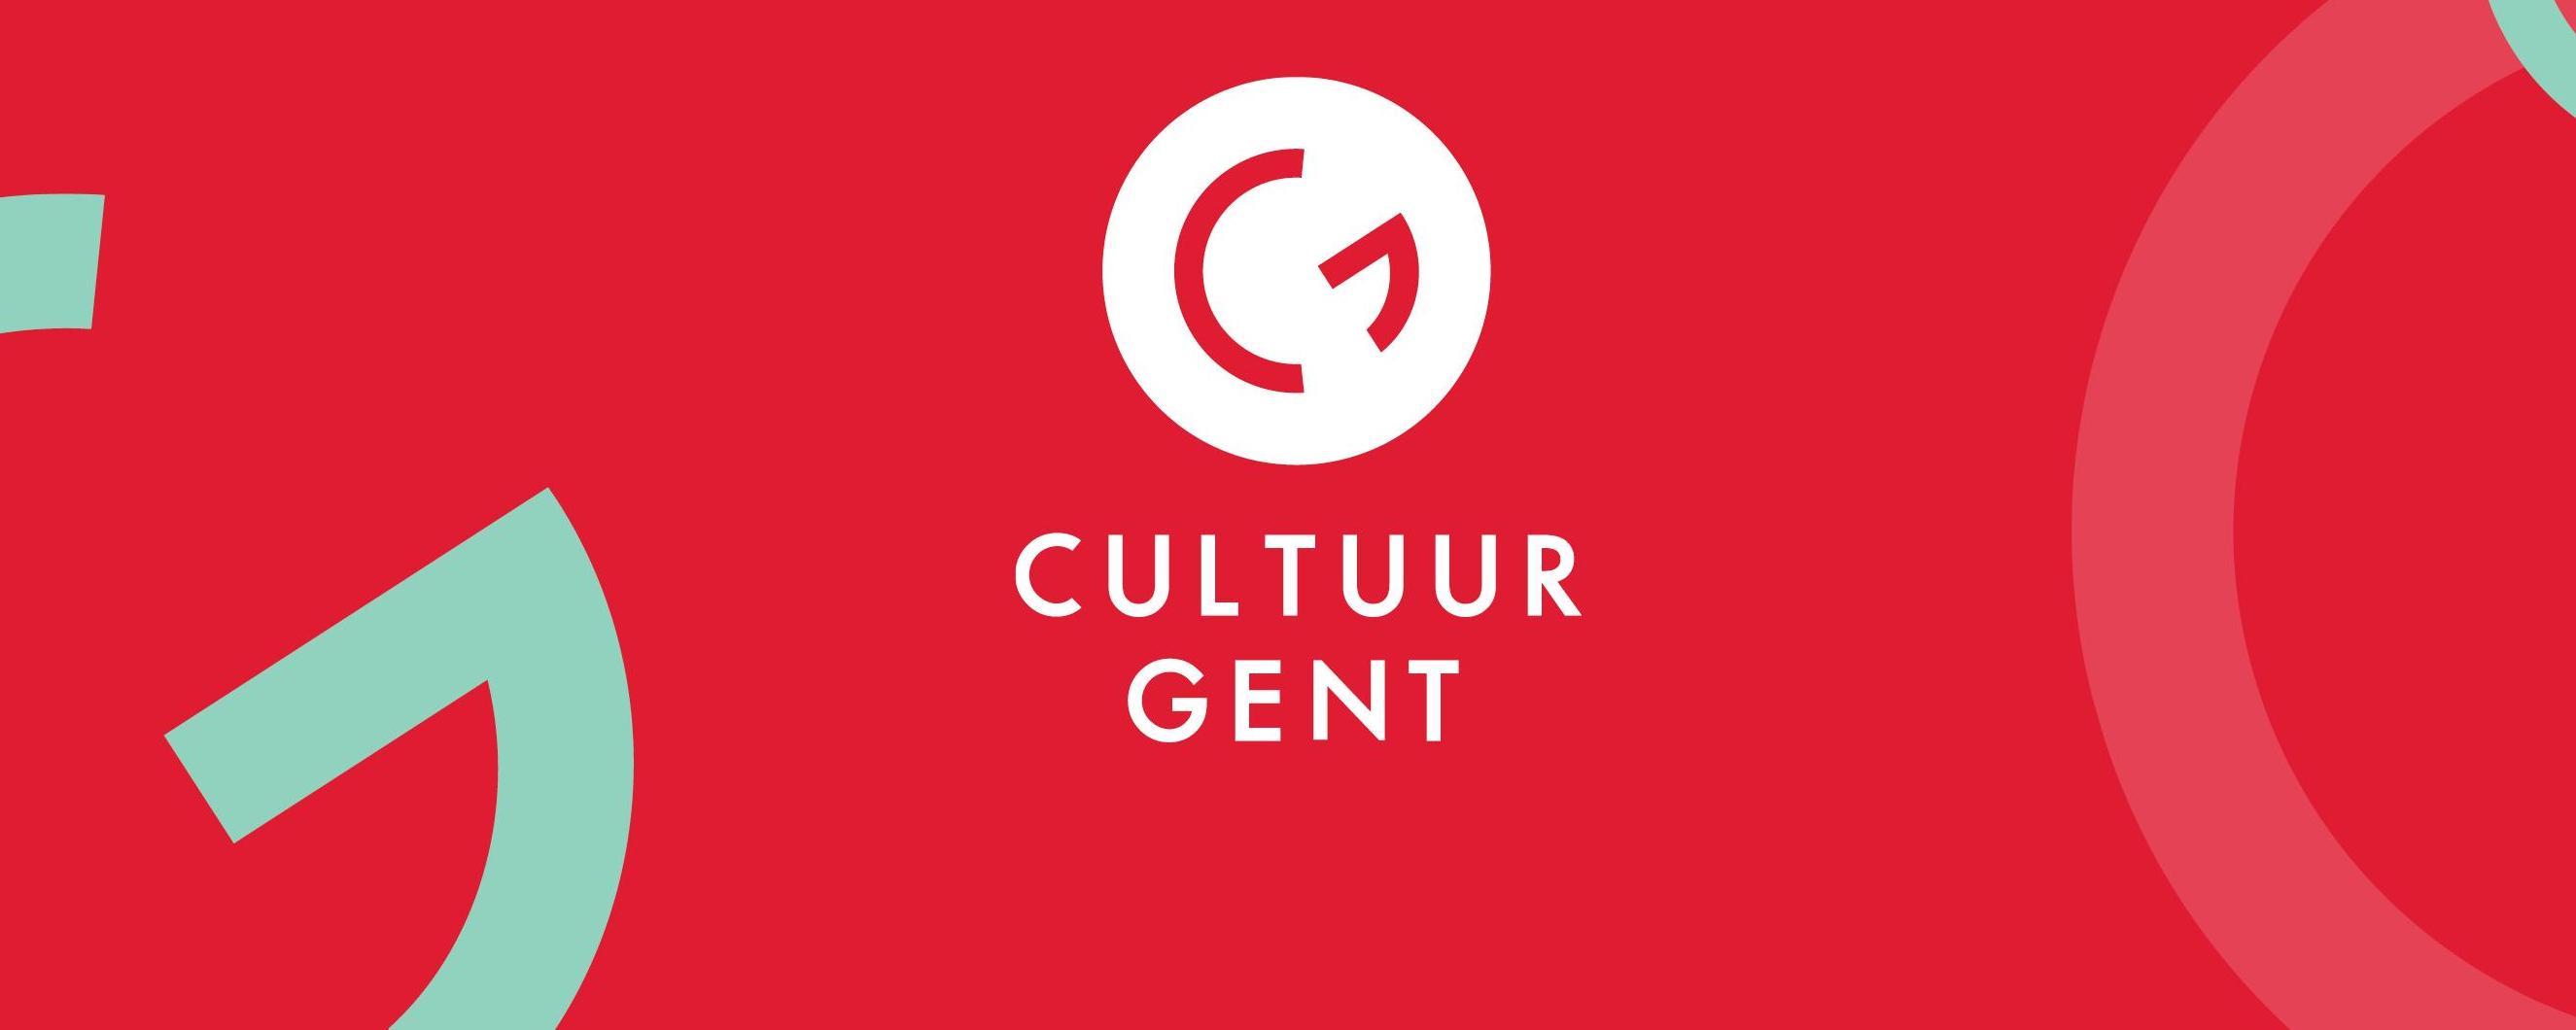 Cultuur Gent